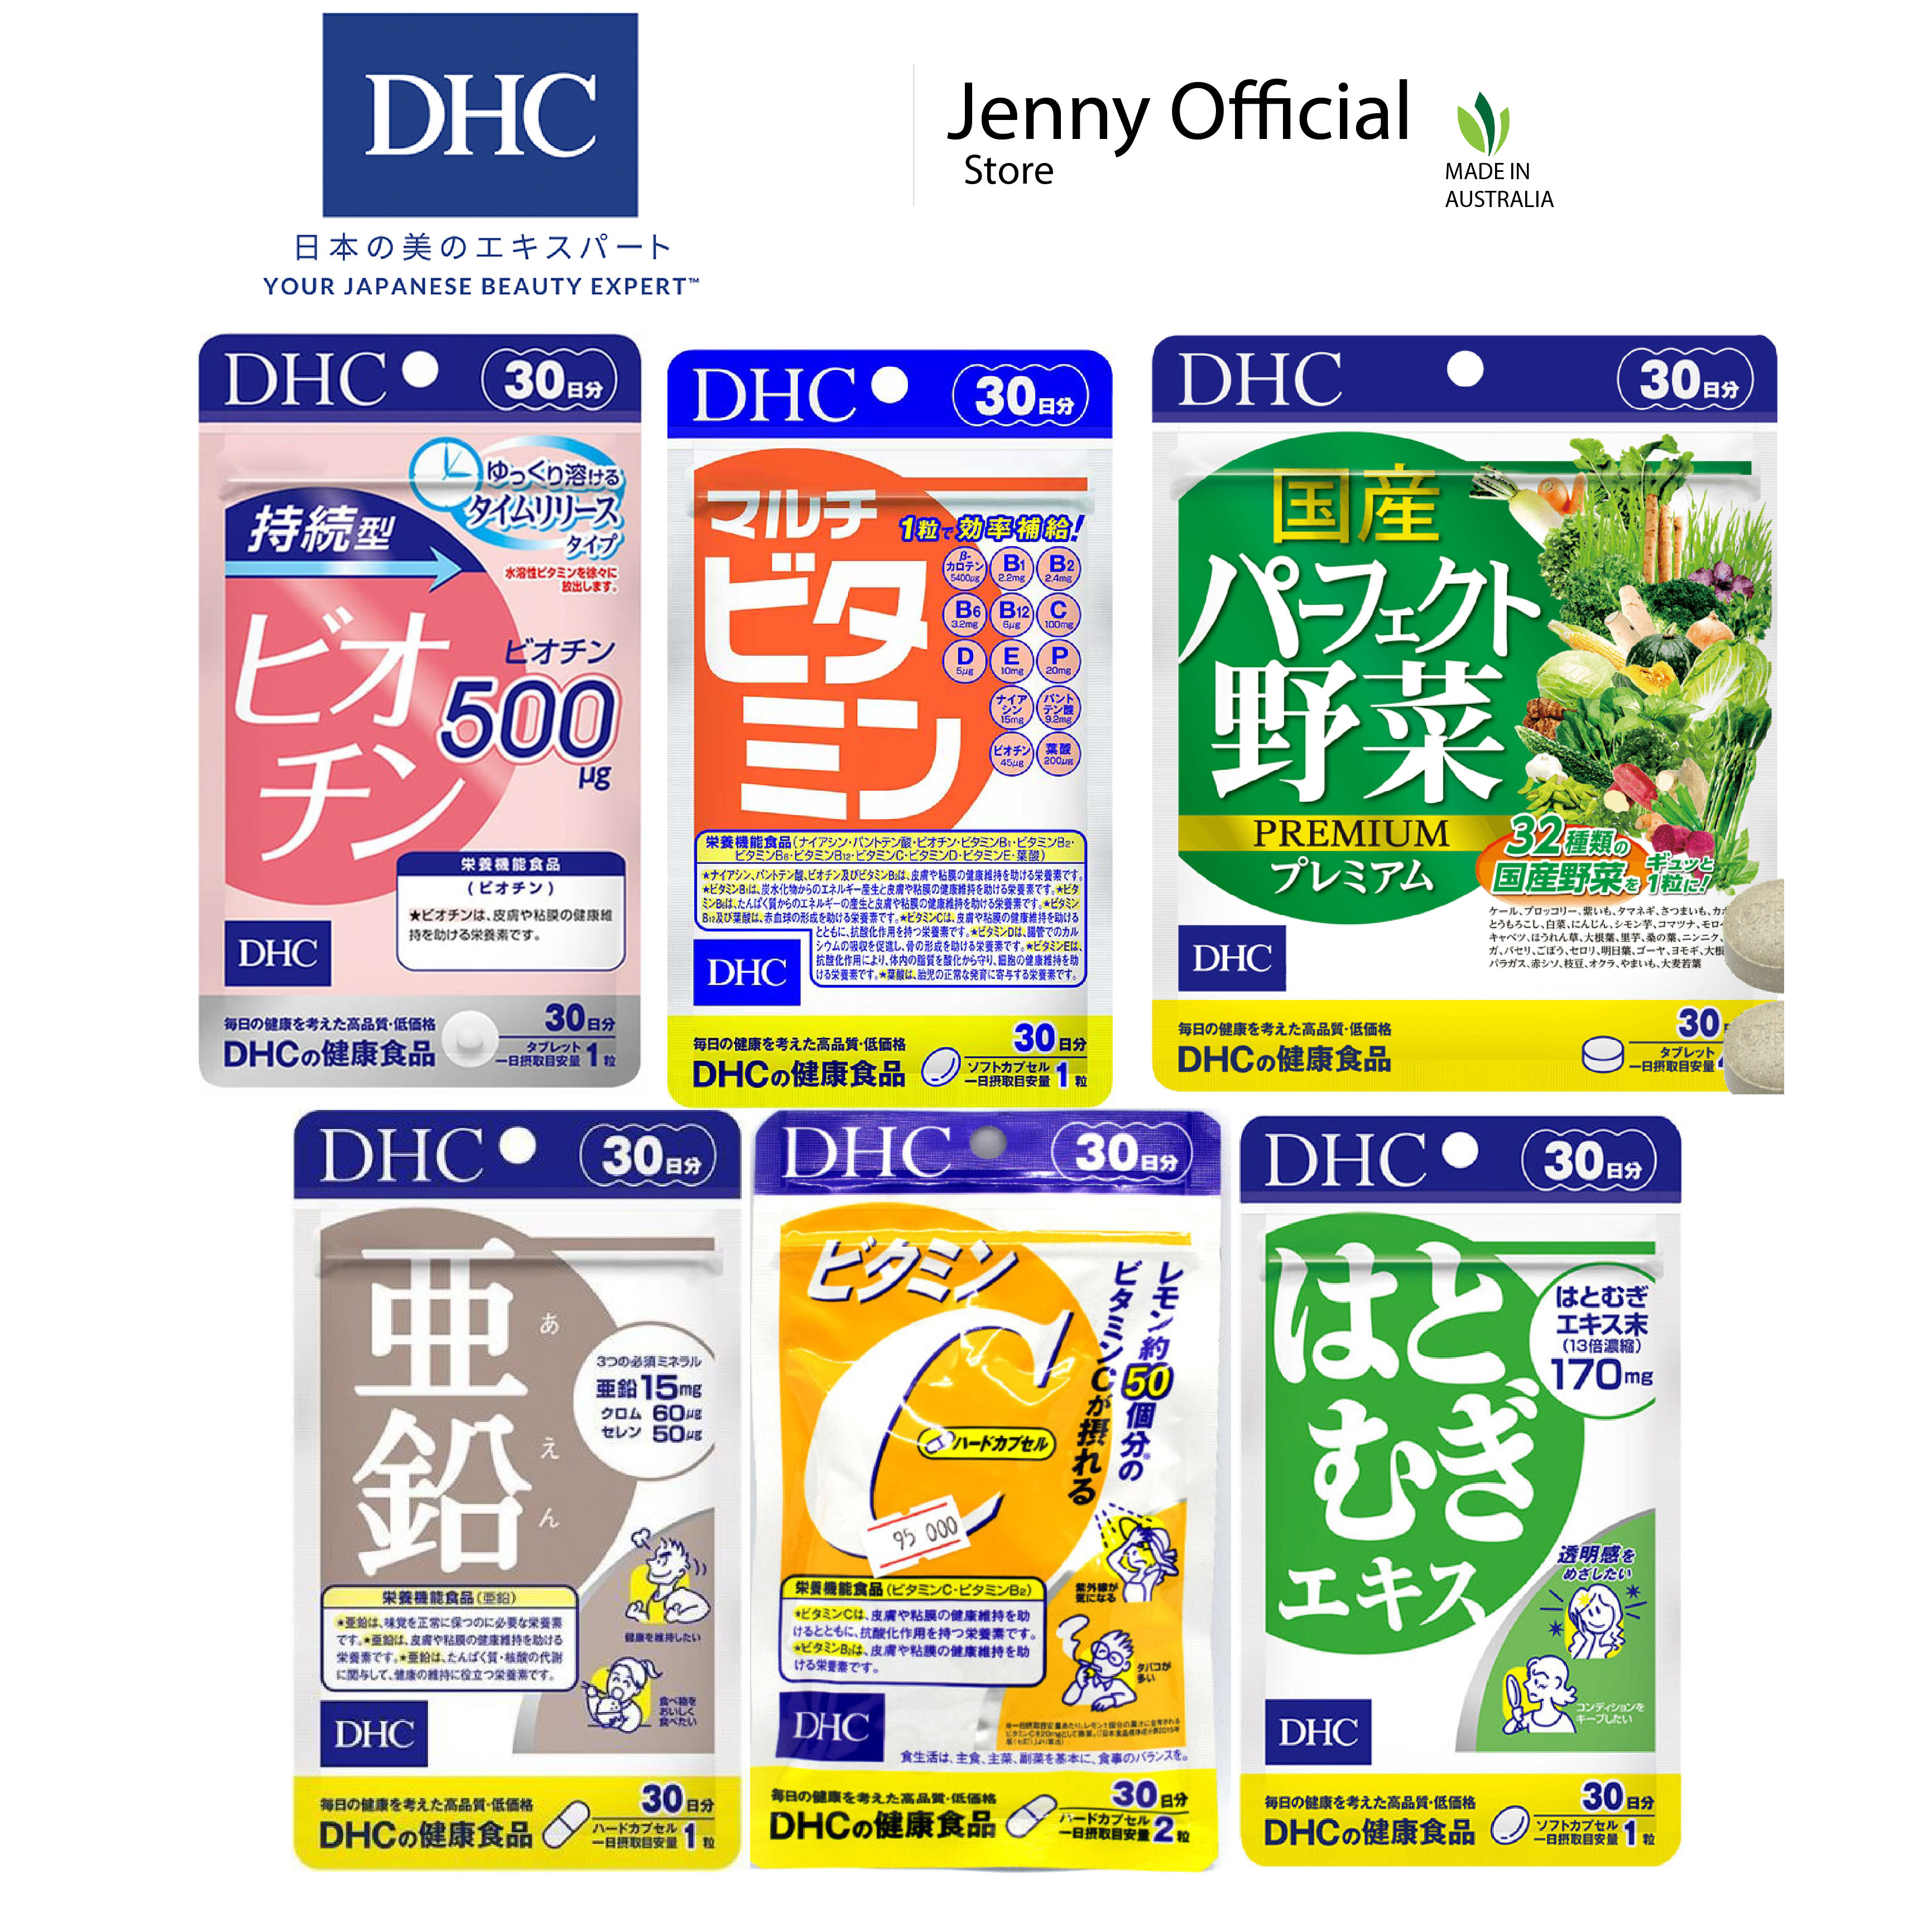 Viên Uống DHC Bổ Sung Vitamin Nhật Bản đủ size, Vitamin C,B,E,Biotin